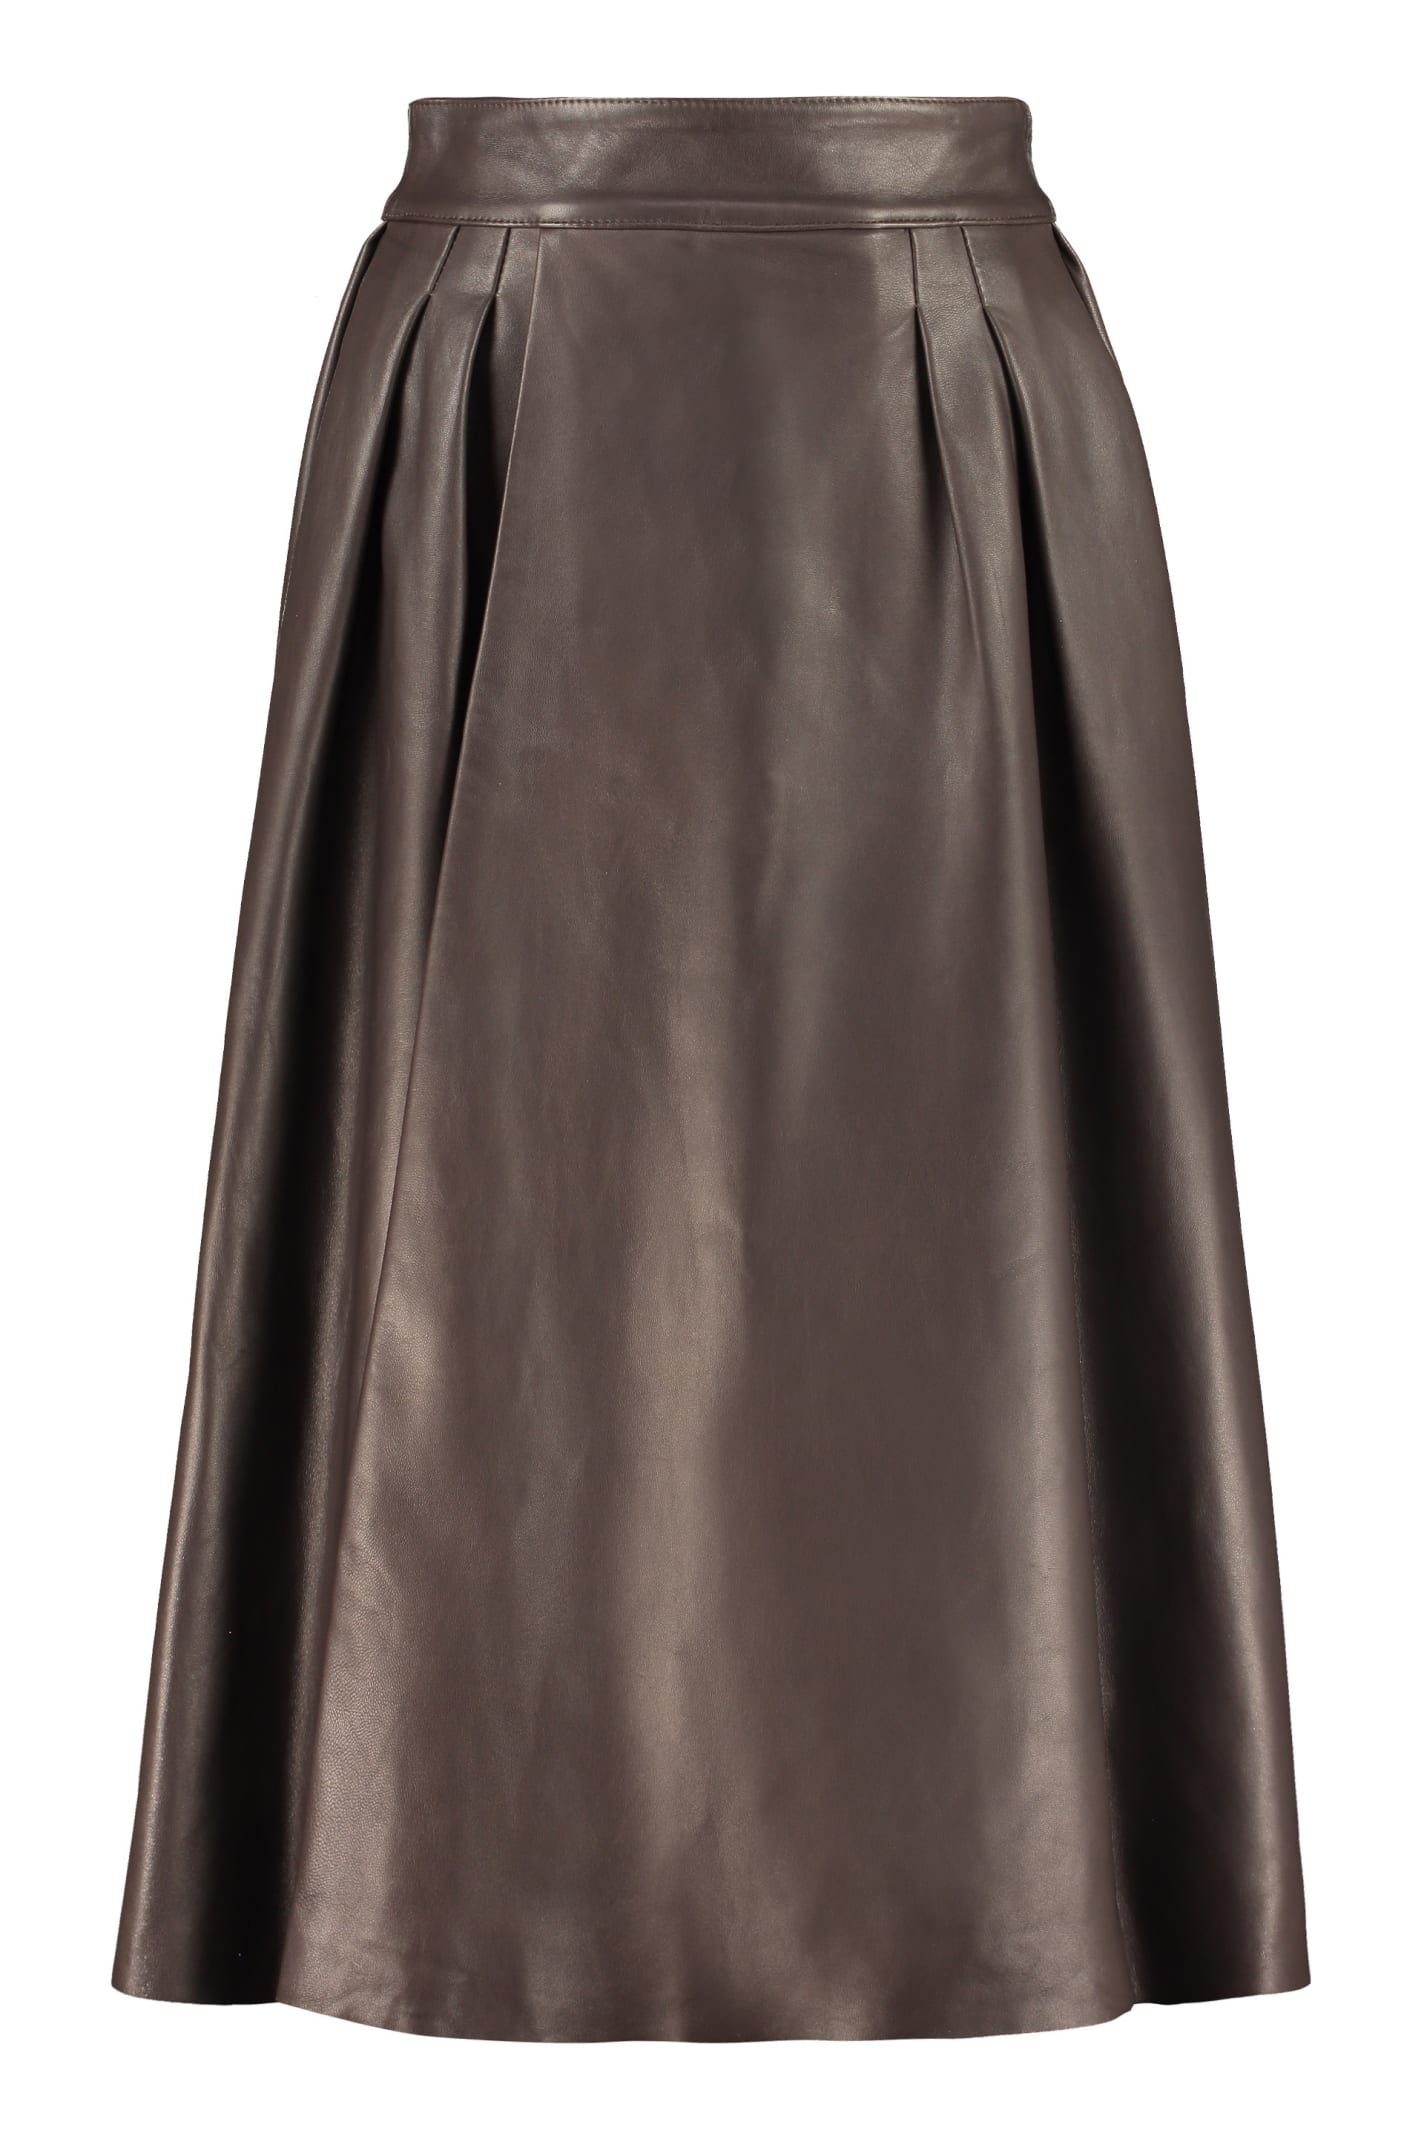 Dolce & Gabbana Leather Full Skirt